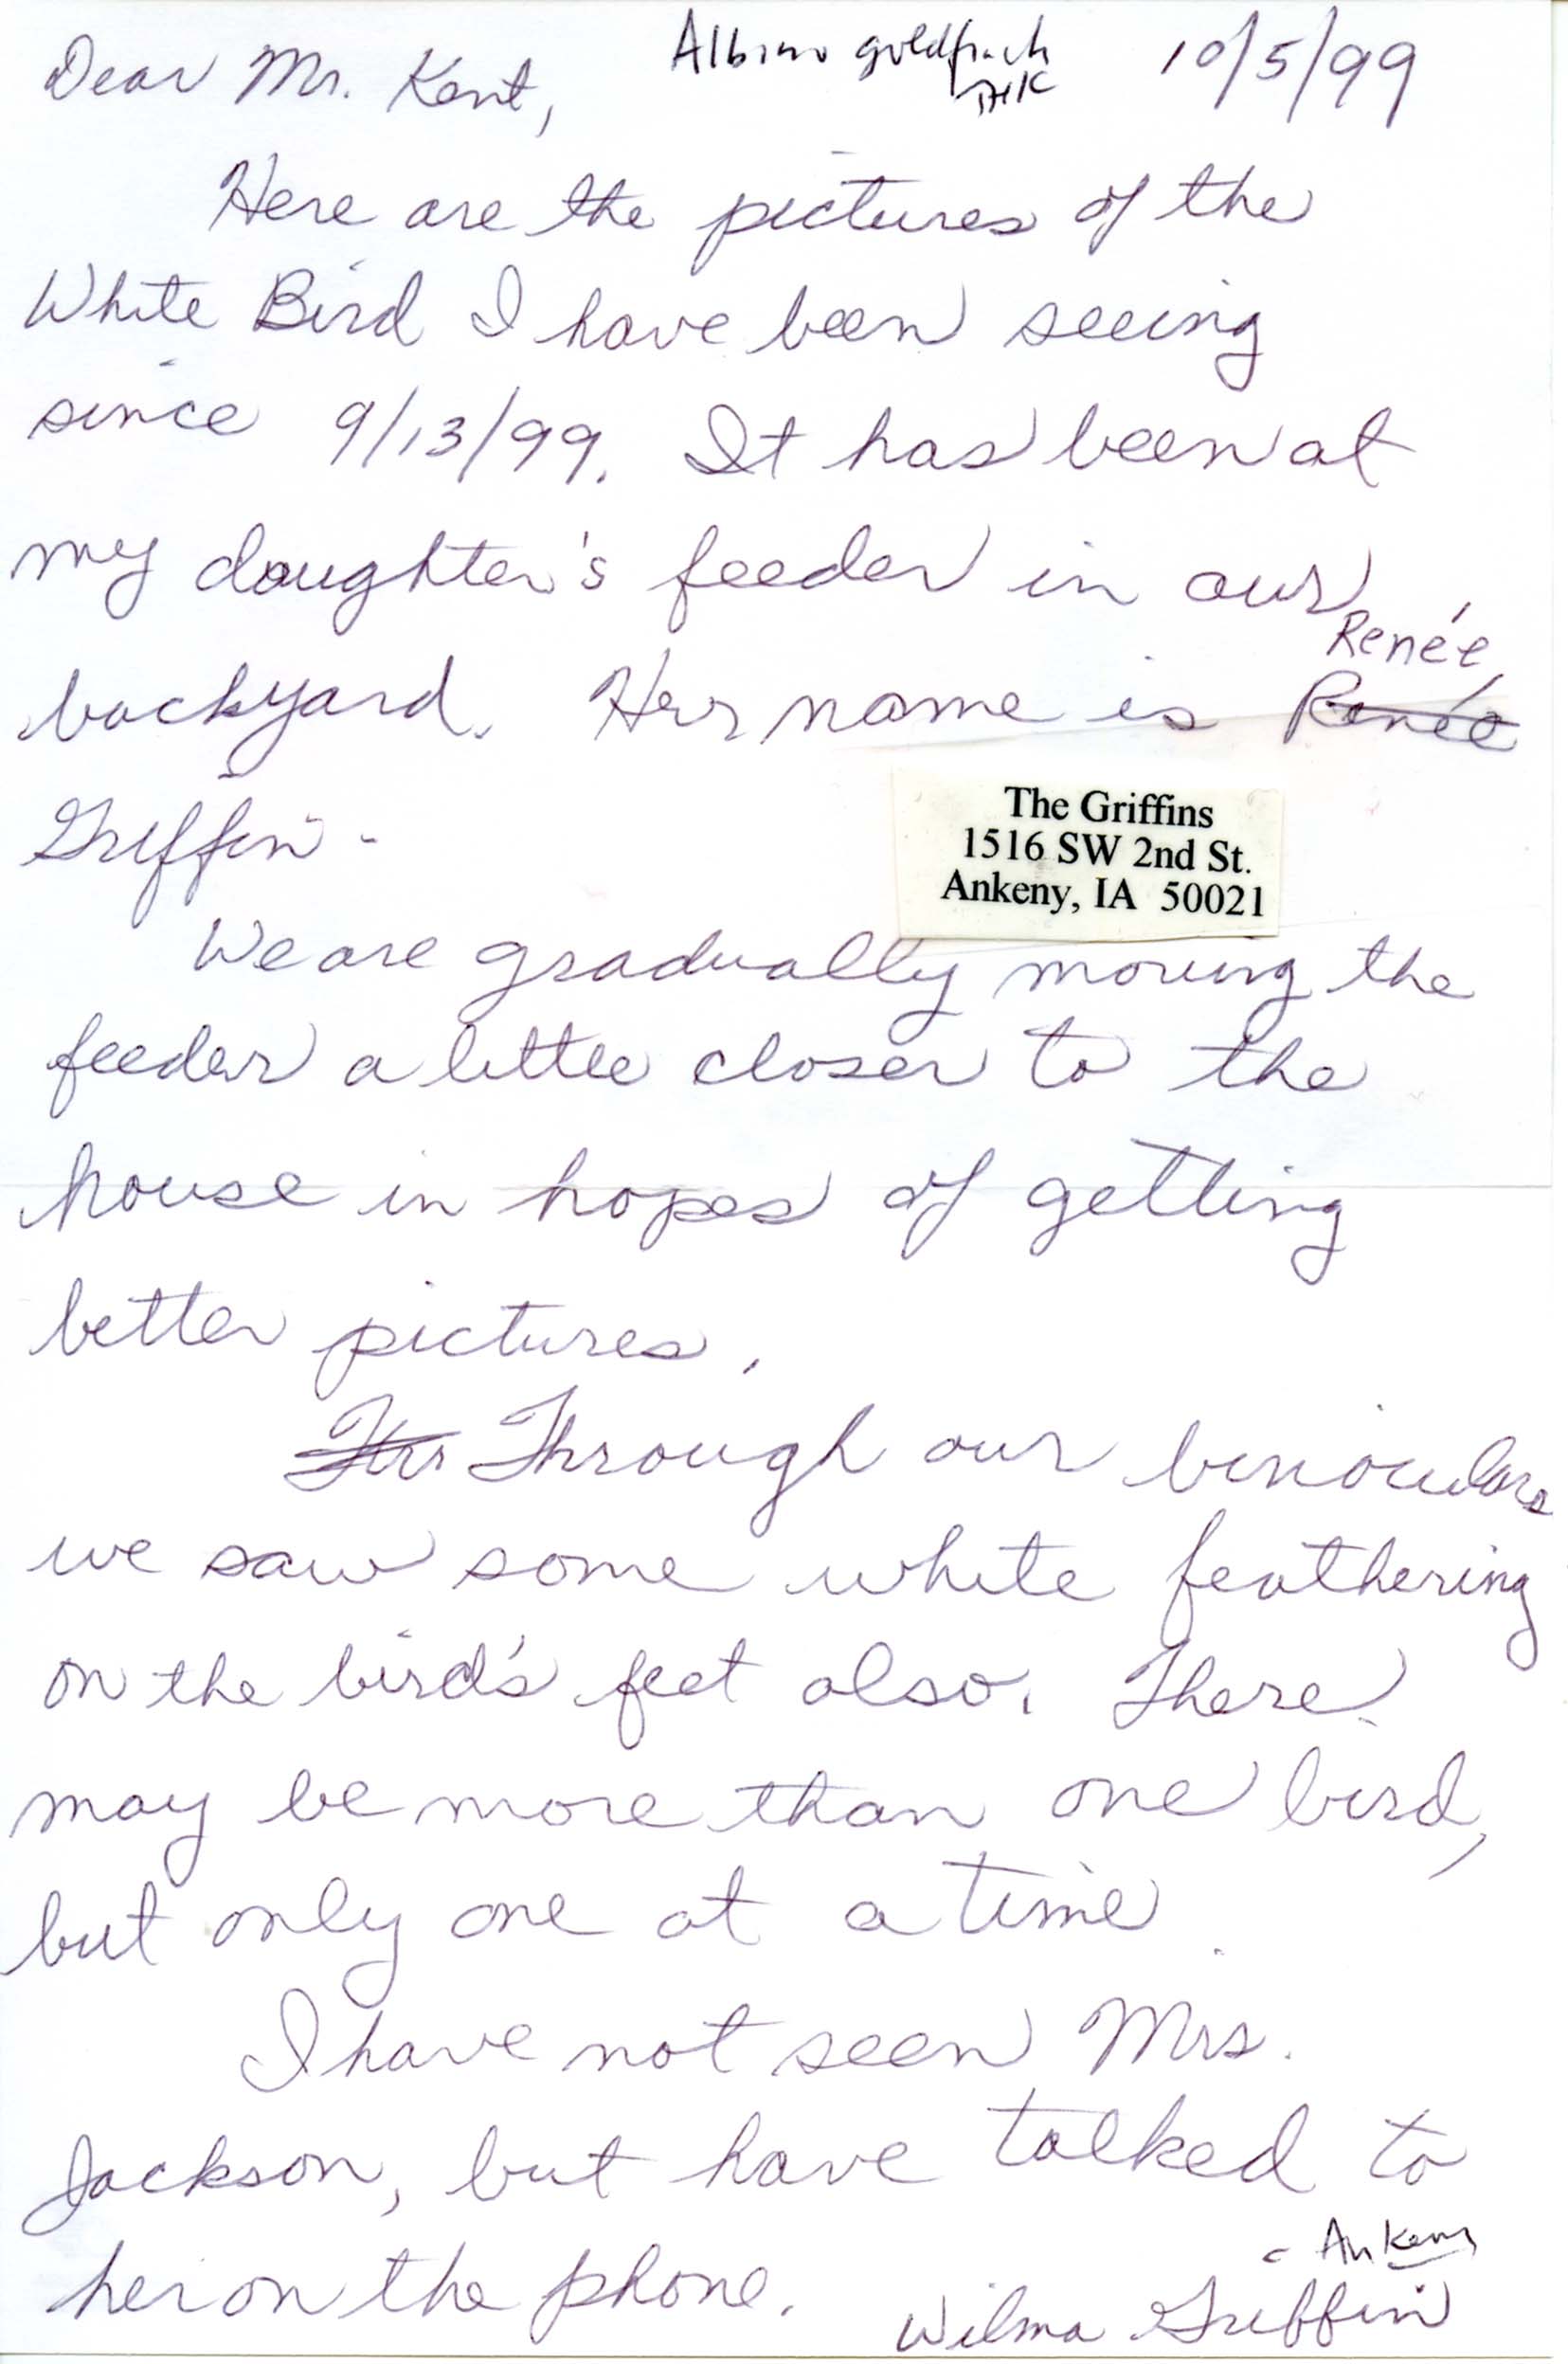 Wilma Griffin letter to Thomas Kent regarding a white bird, October 5, 1999